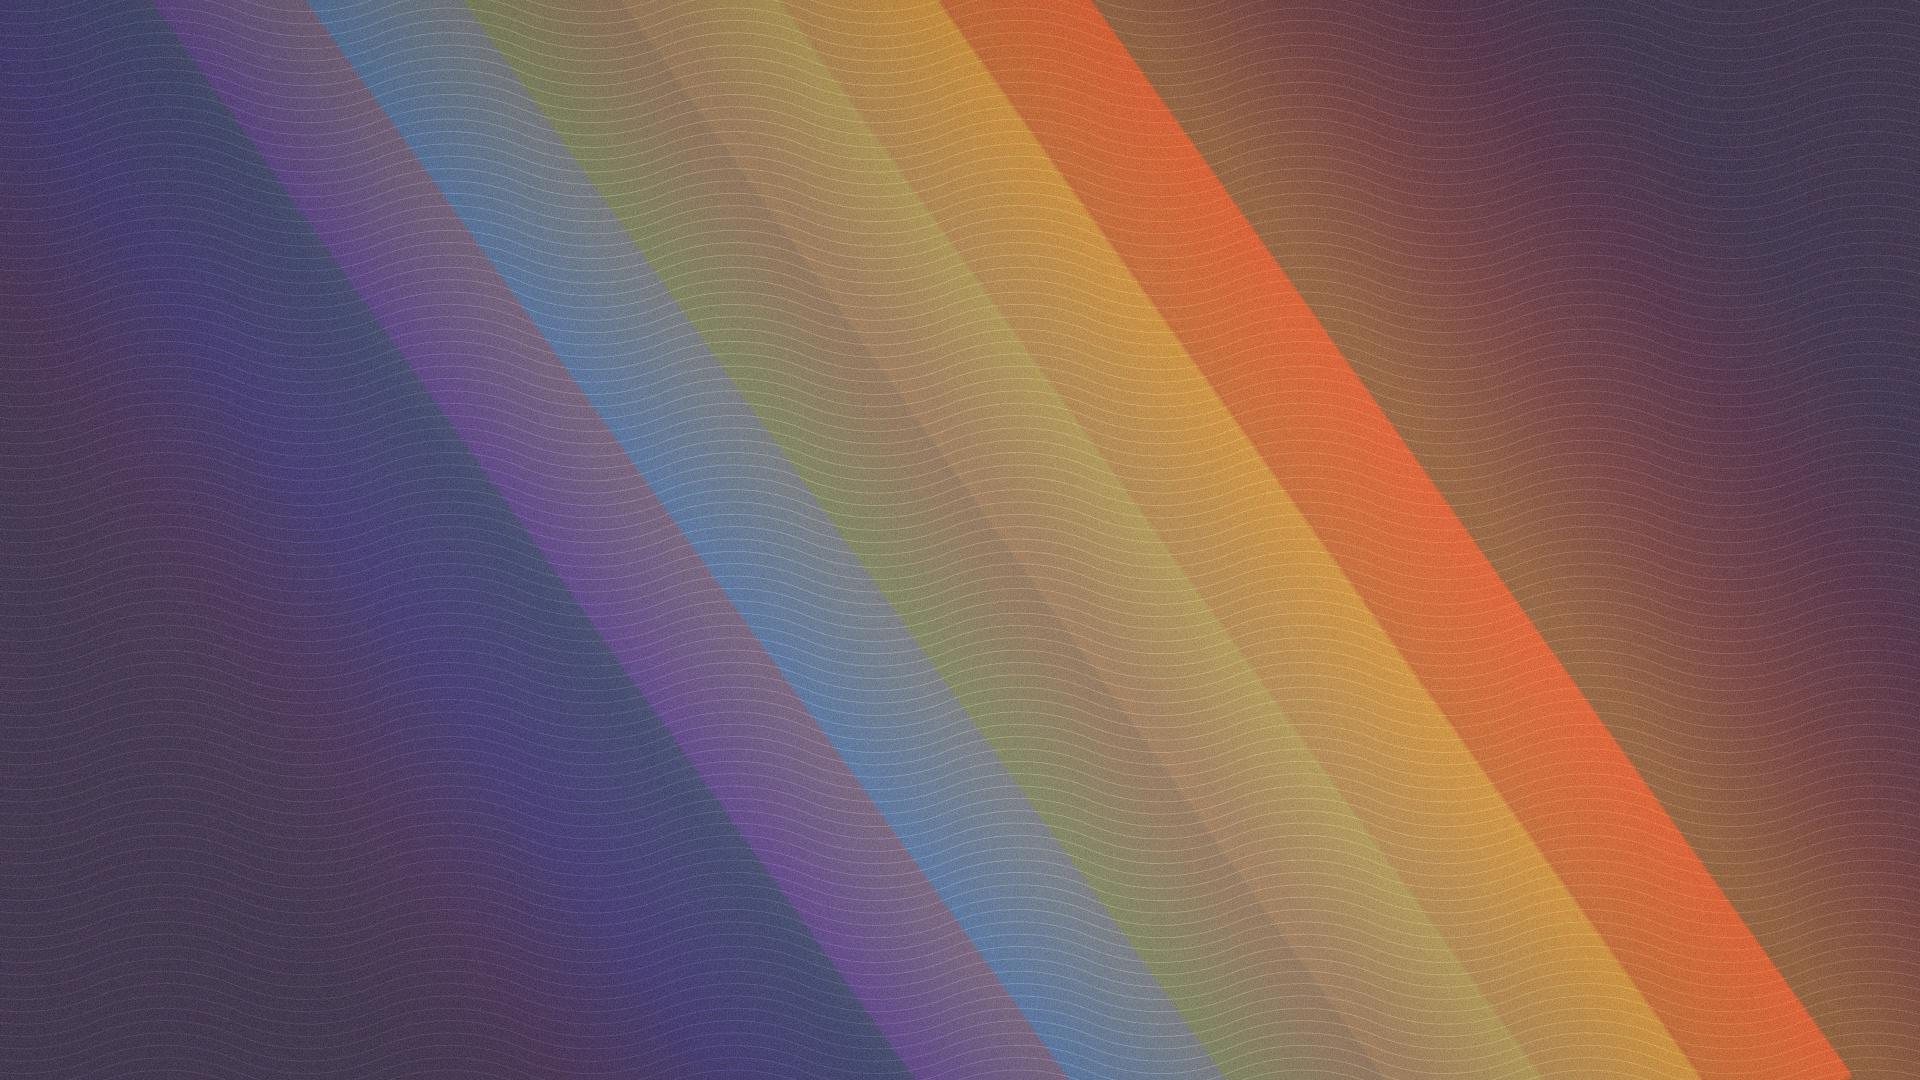 Rainbow colors - happy pride